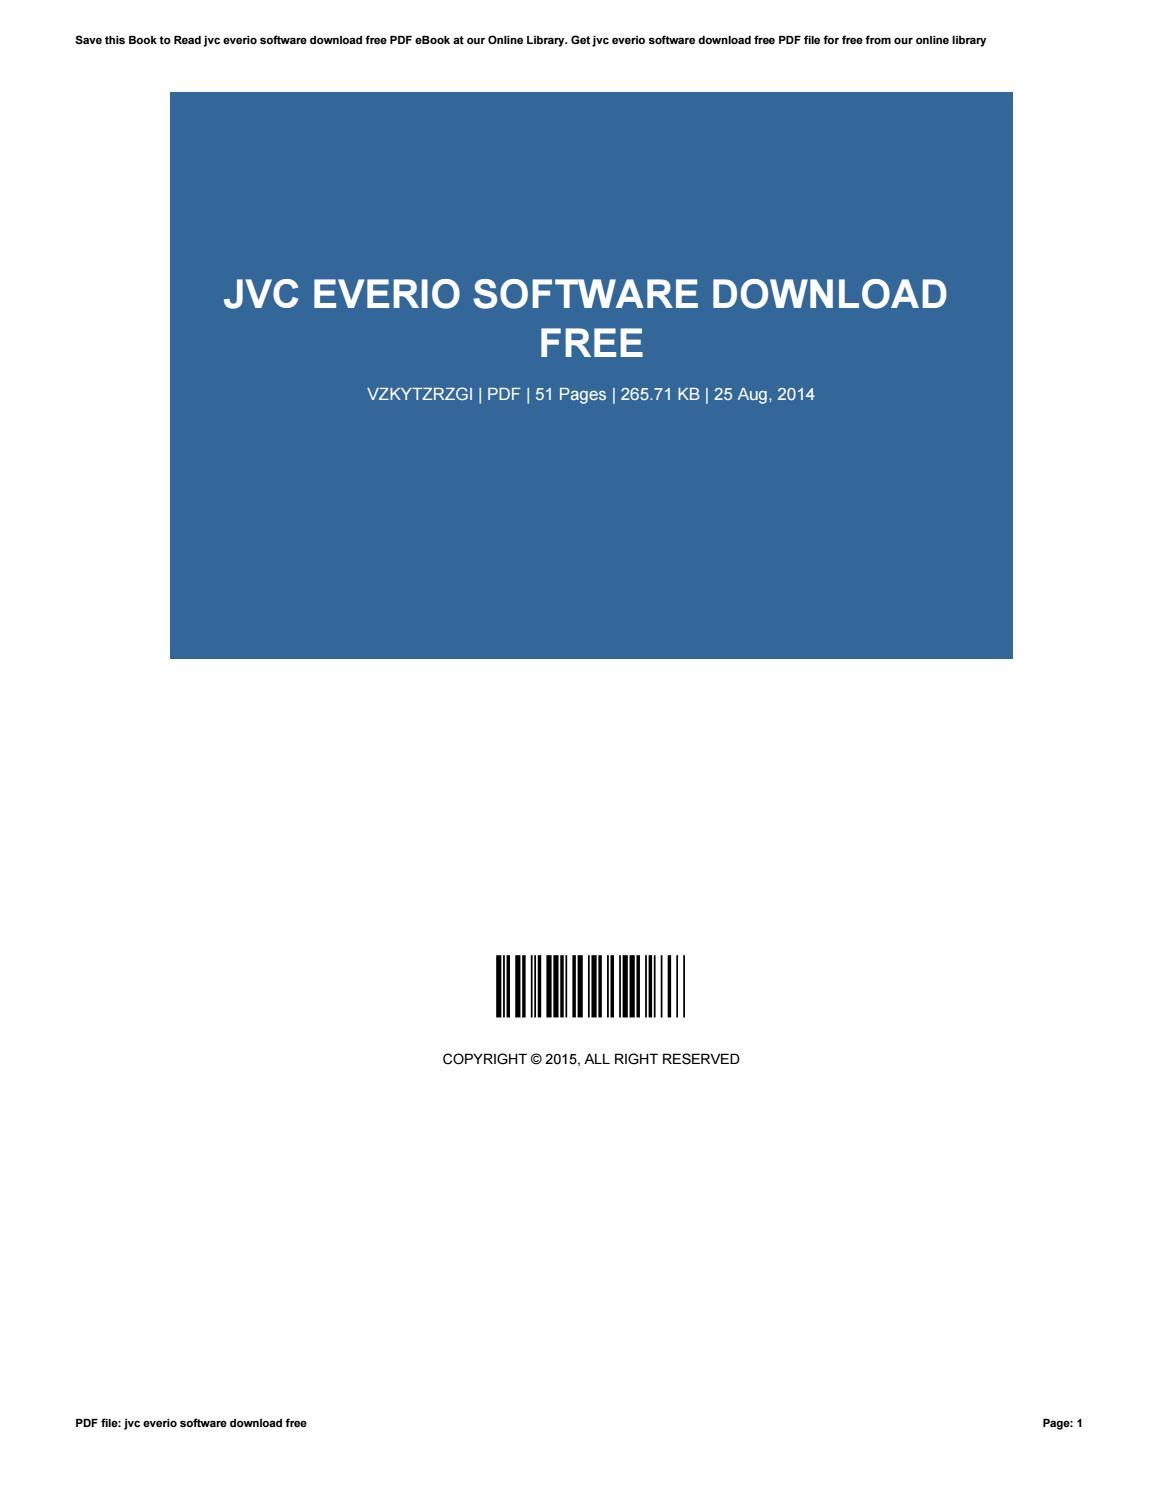 jvc everio software for pc